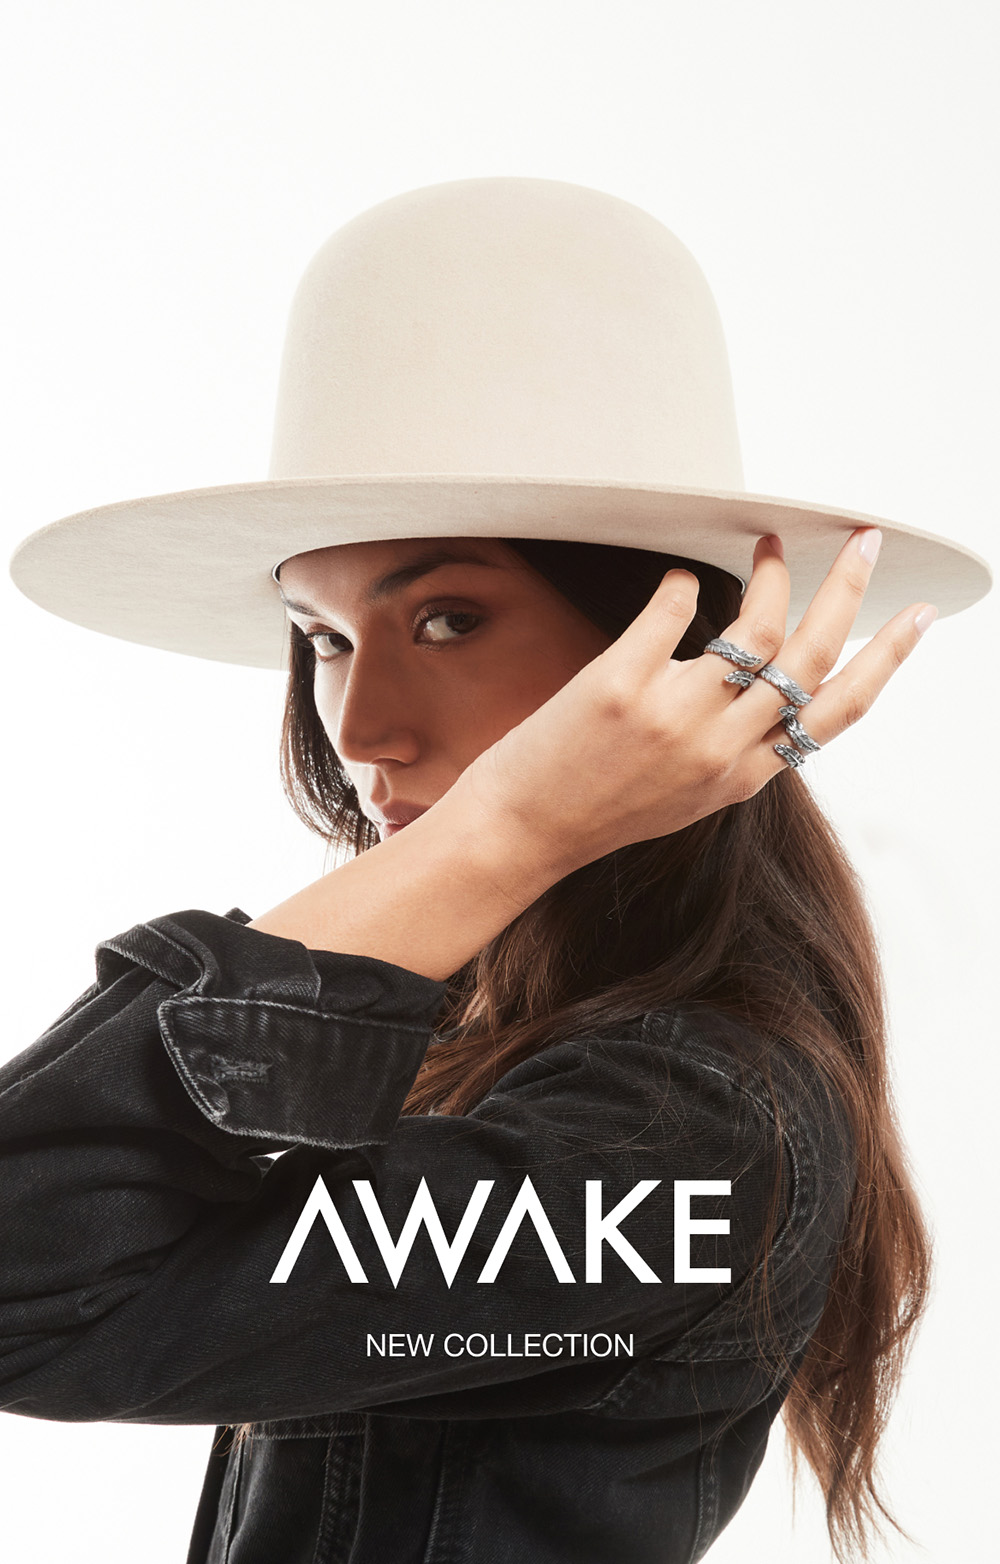 Con la nuova collezione Awake, Nove25 risveglia la connessione con la natura e realizza gioielli dallo spirito wild, in una riscoperta del fascino esotico ed elementale.